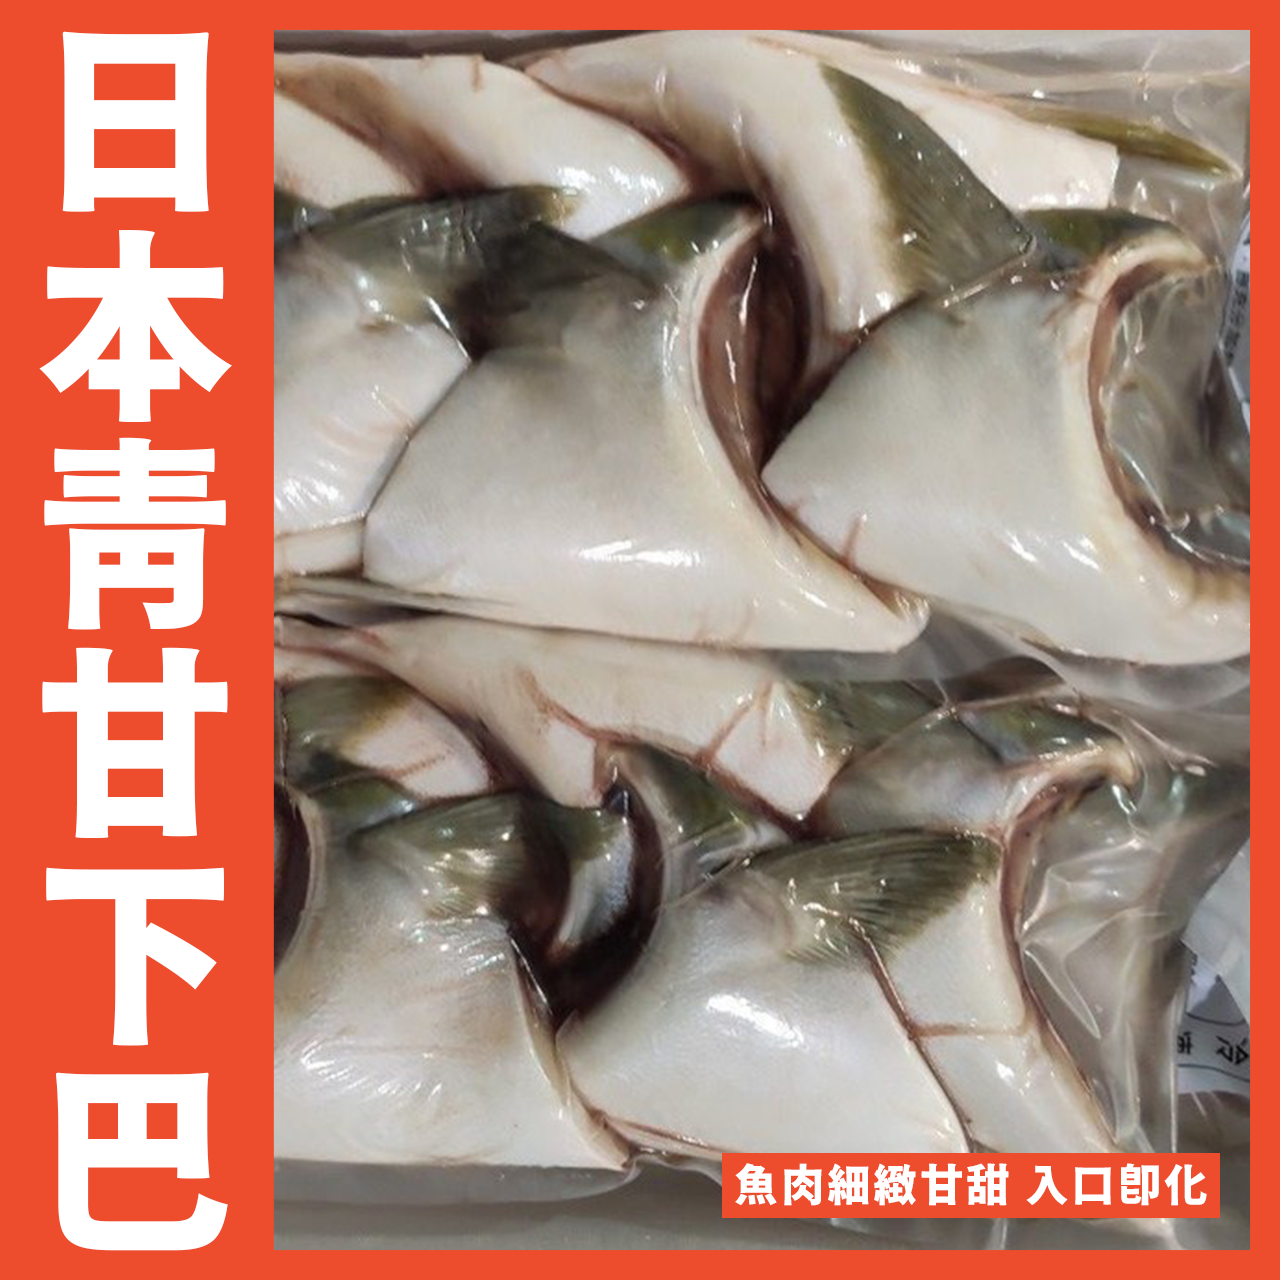 【天天來海鮮】日本原裝進口青甘下巴1.25公斤/包